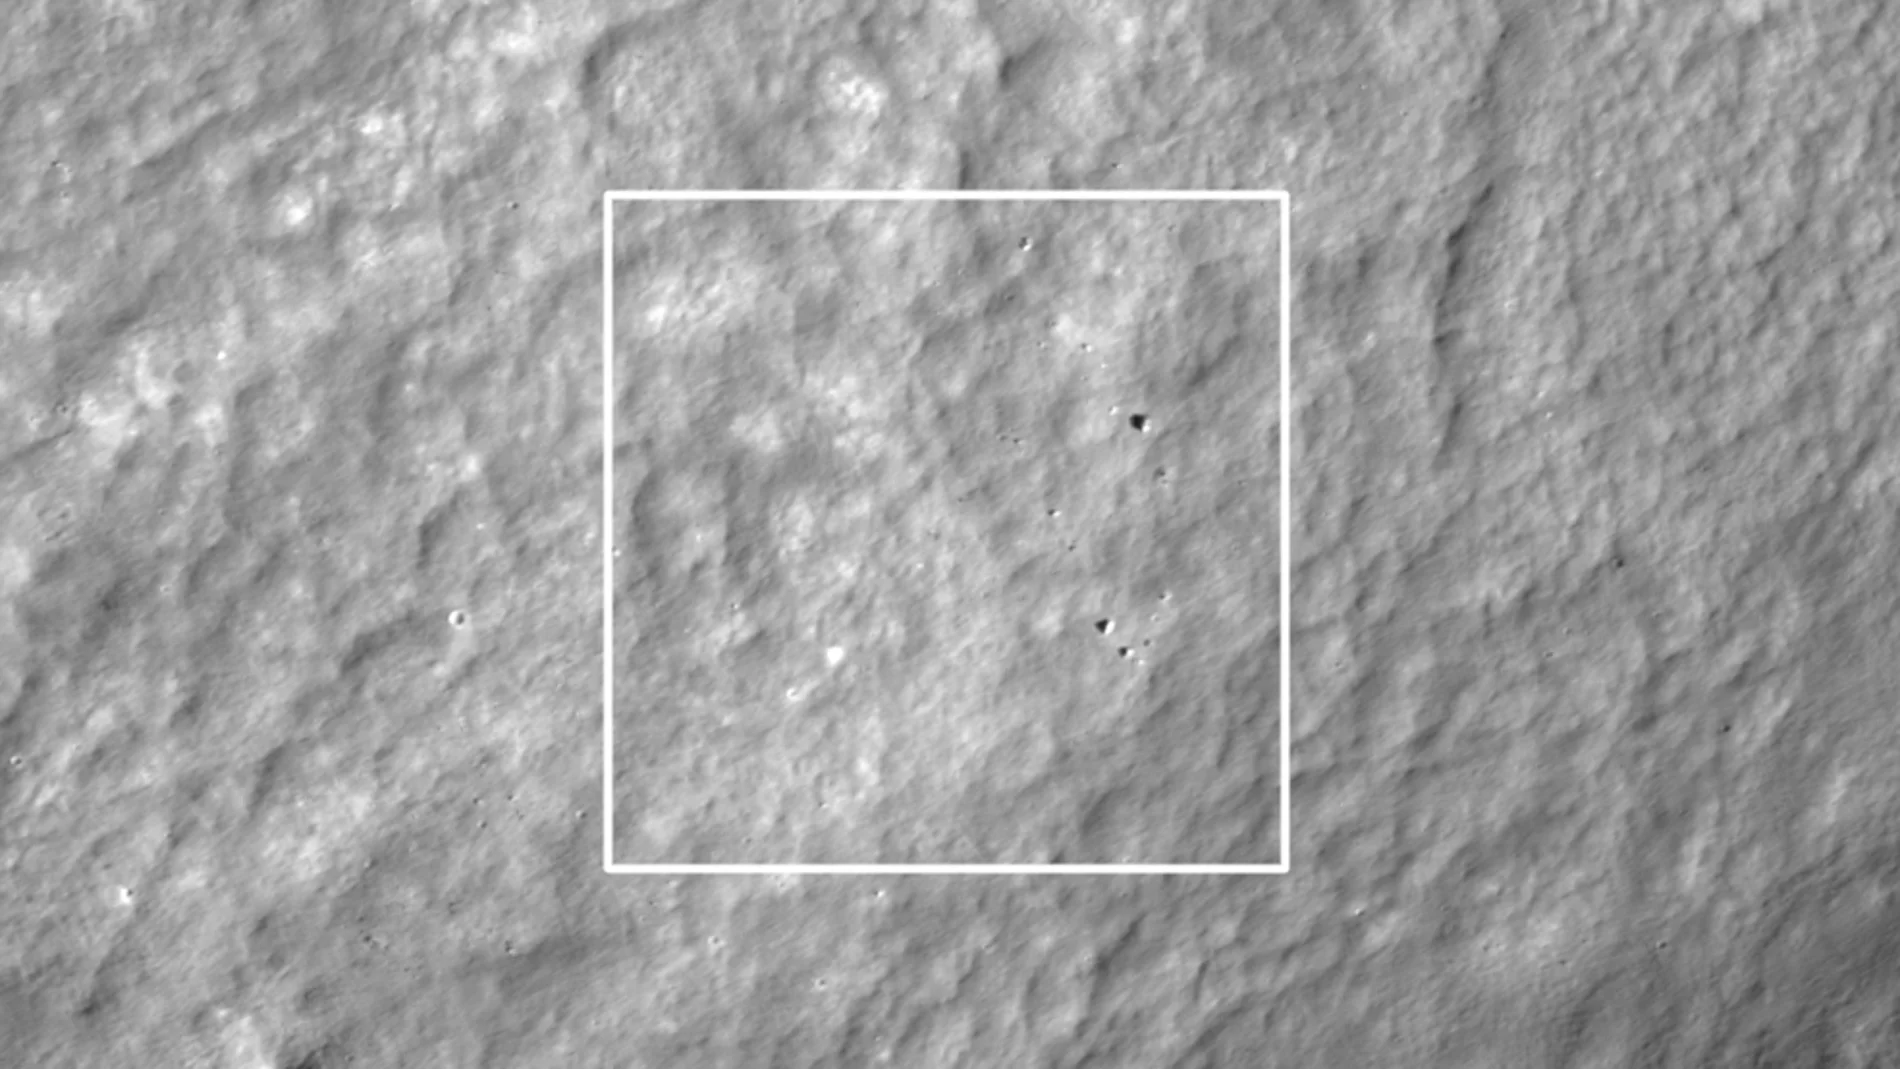 La NASA publica imágenes de los restos de Hakuto-R, la nave japonesa desaparecida en la Luna